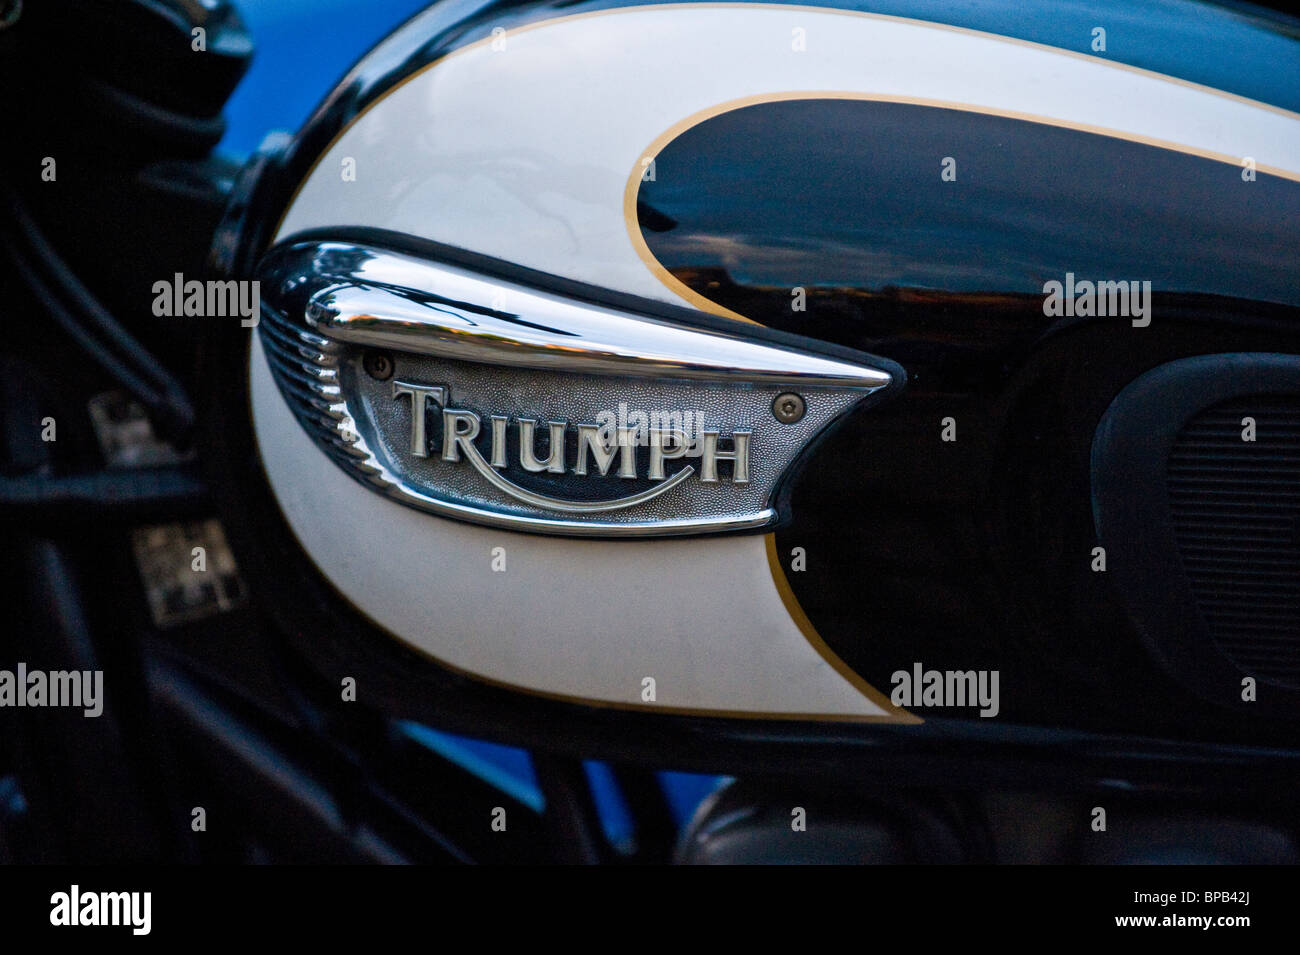 Nahaufnahme des Triumph-Logos auf einem Benzintank eines Motorrads Stockfoto